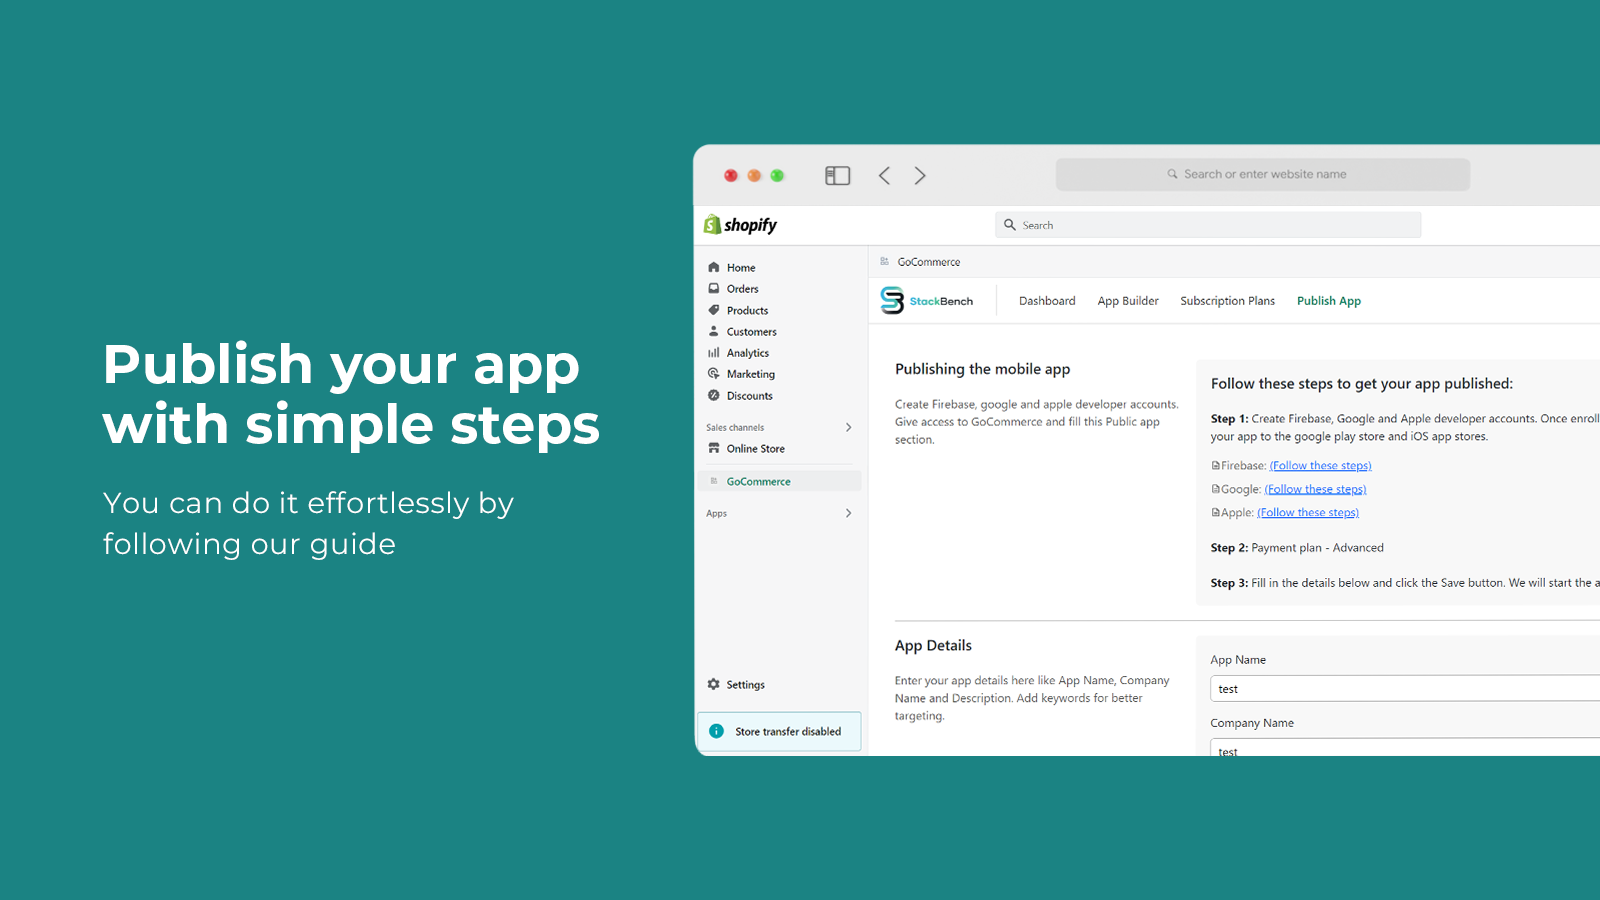 Publique o aplicativo Android e iOS com passos simples